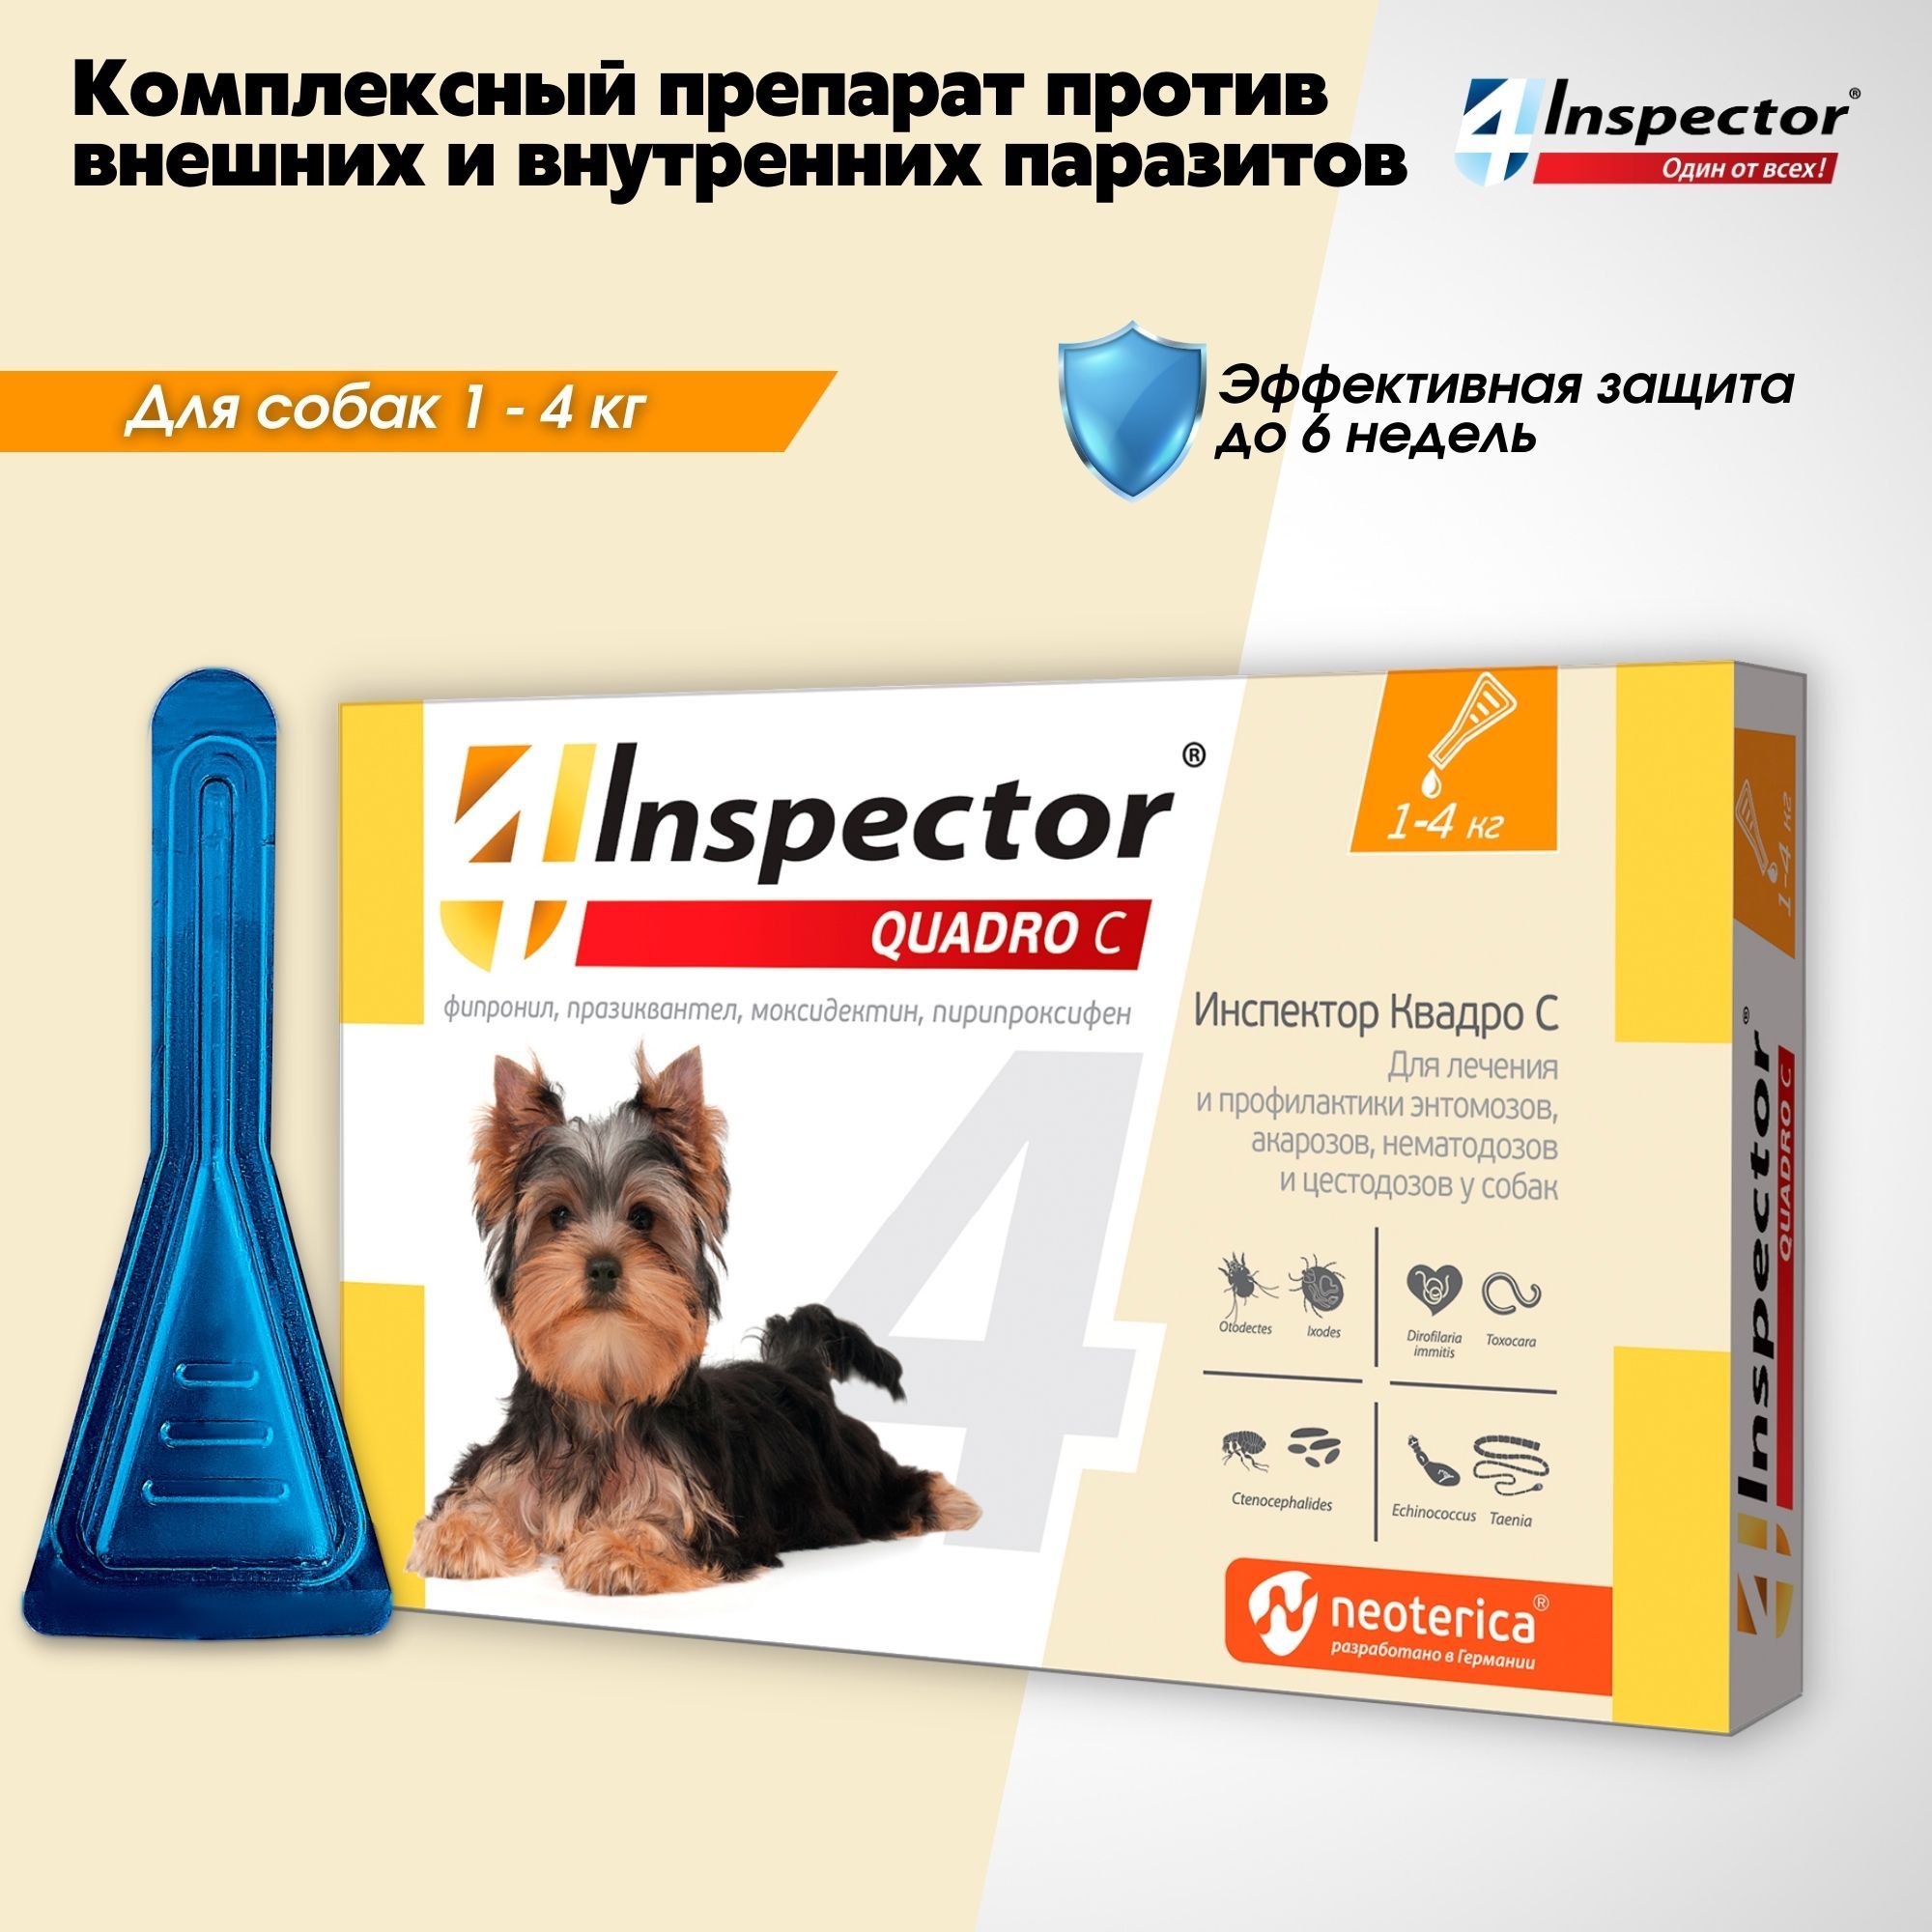 Инспектор для собак состав. Инспектор капли для собак до 4 кг. Капли для кошек "Inspector Quadro" 1-4 кг от блох. Инспектор таблетки для собак 4-10 кг. "Инспектор Квадро с", капли для собак 1-4кг.